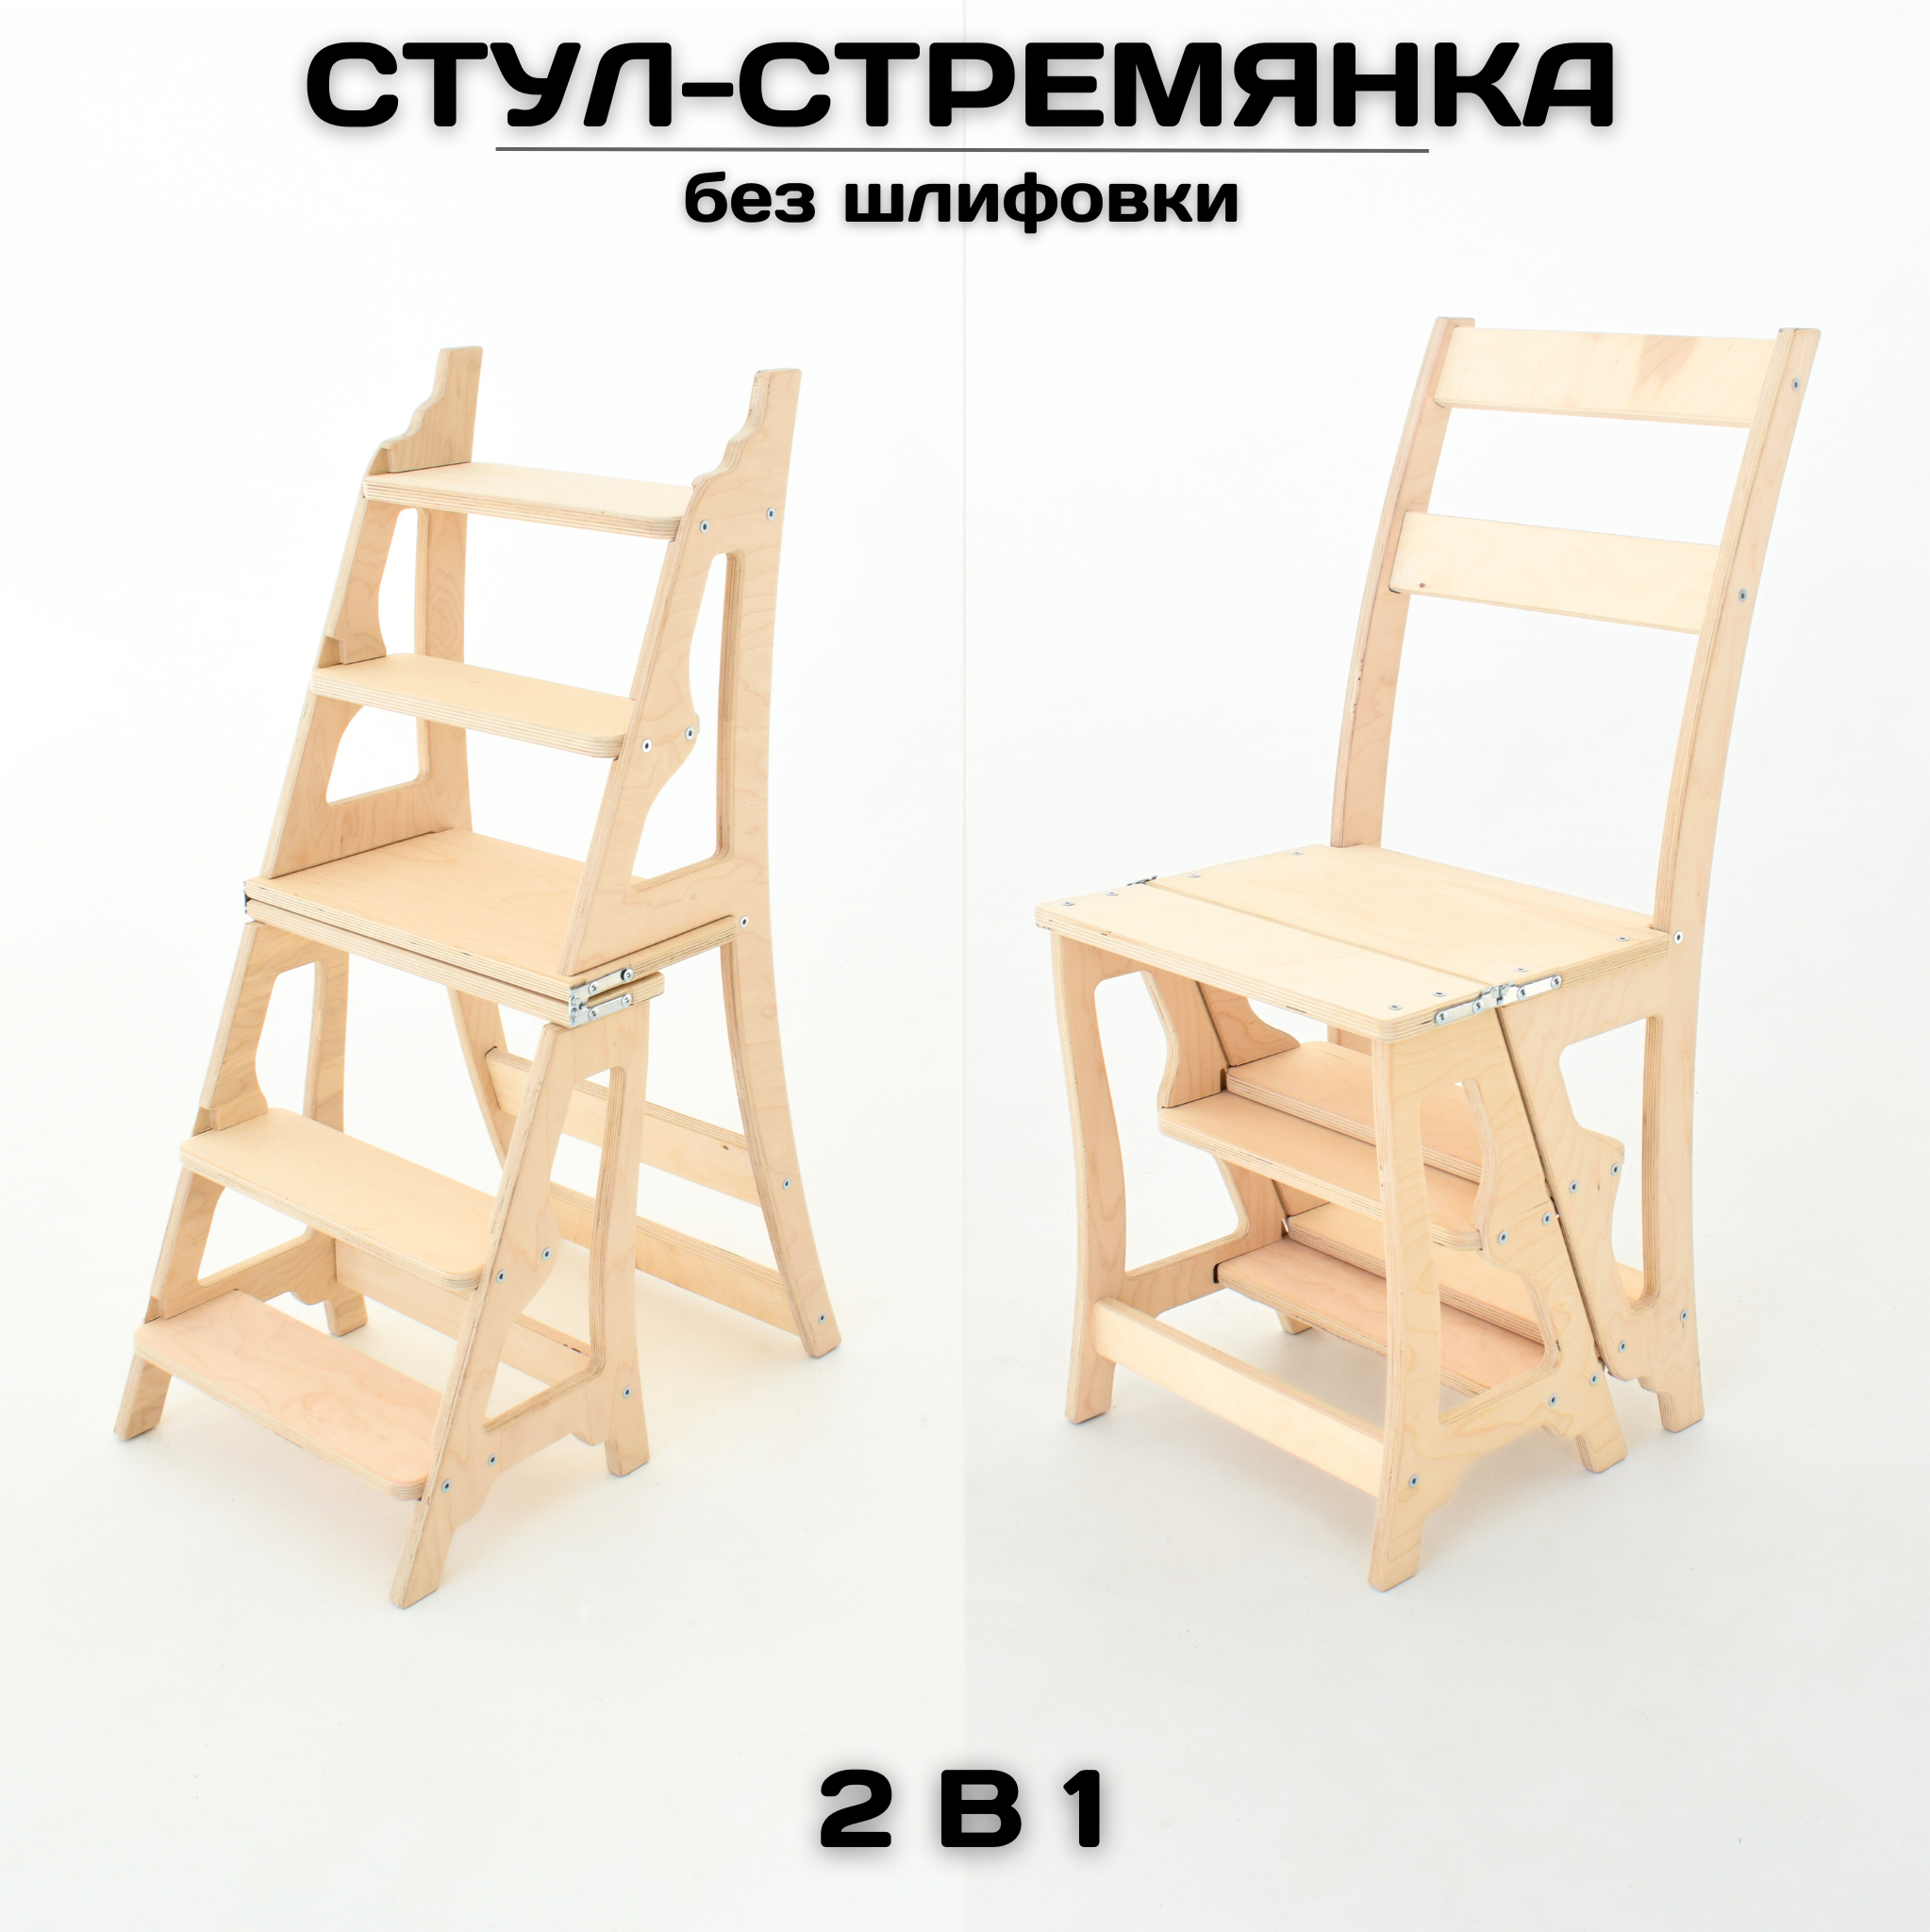 Стул-стремянка лестница, складной деревянный стул, натуральный без шлифовки